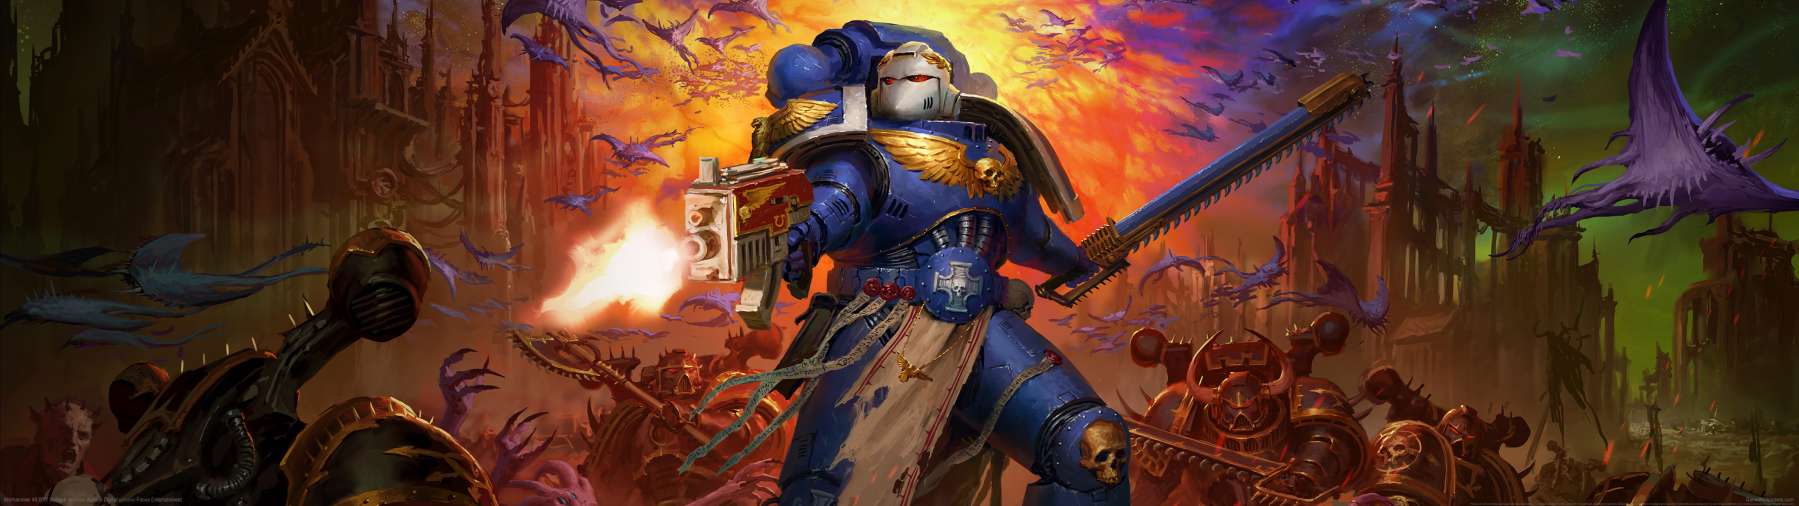 Warhammer 40,000: Boltgun fond d'cran